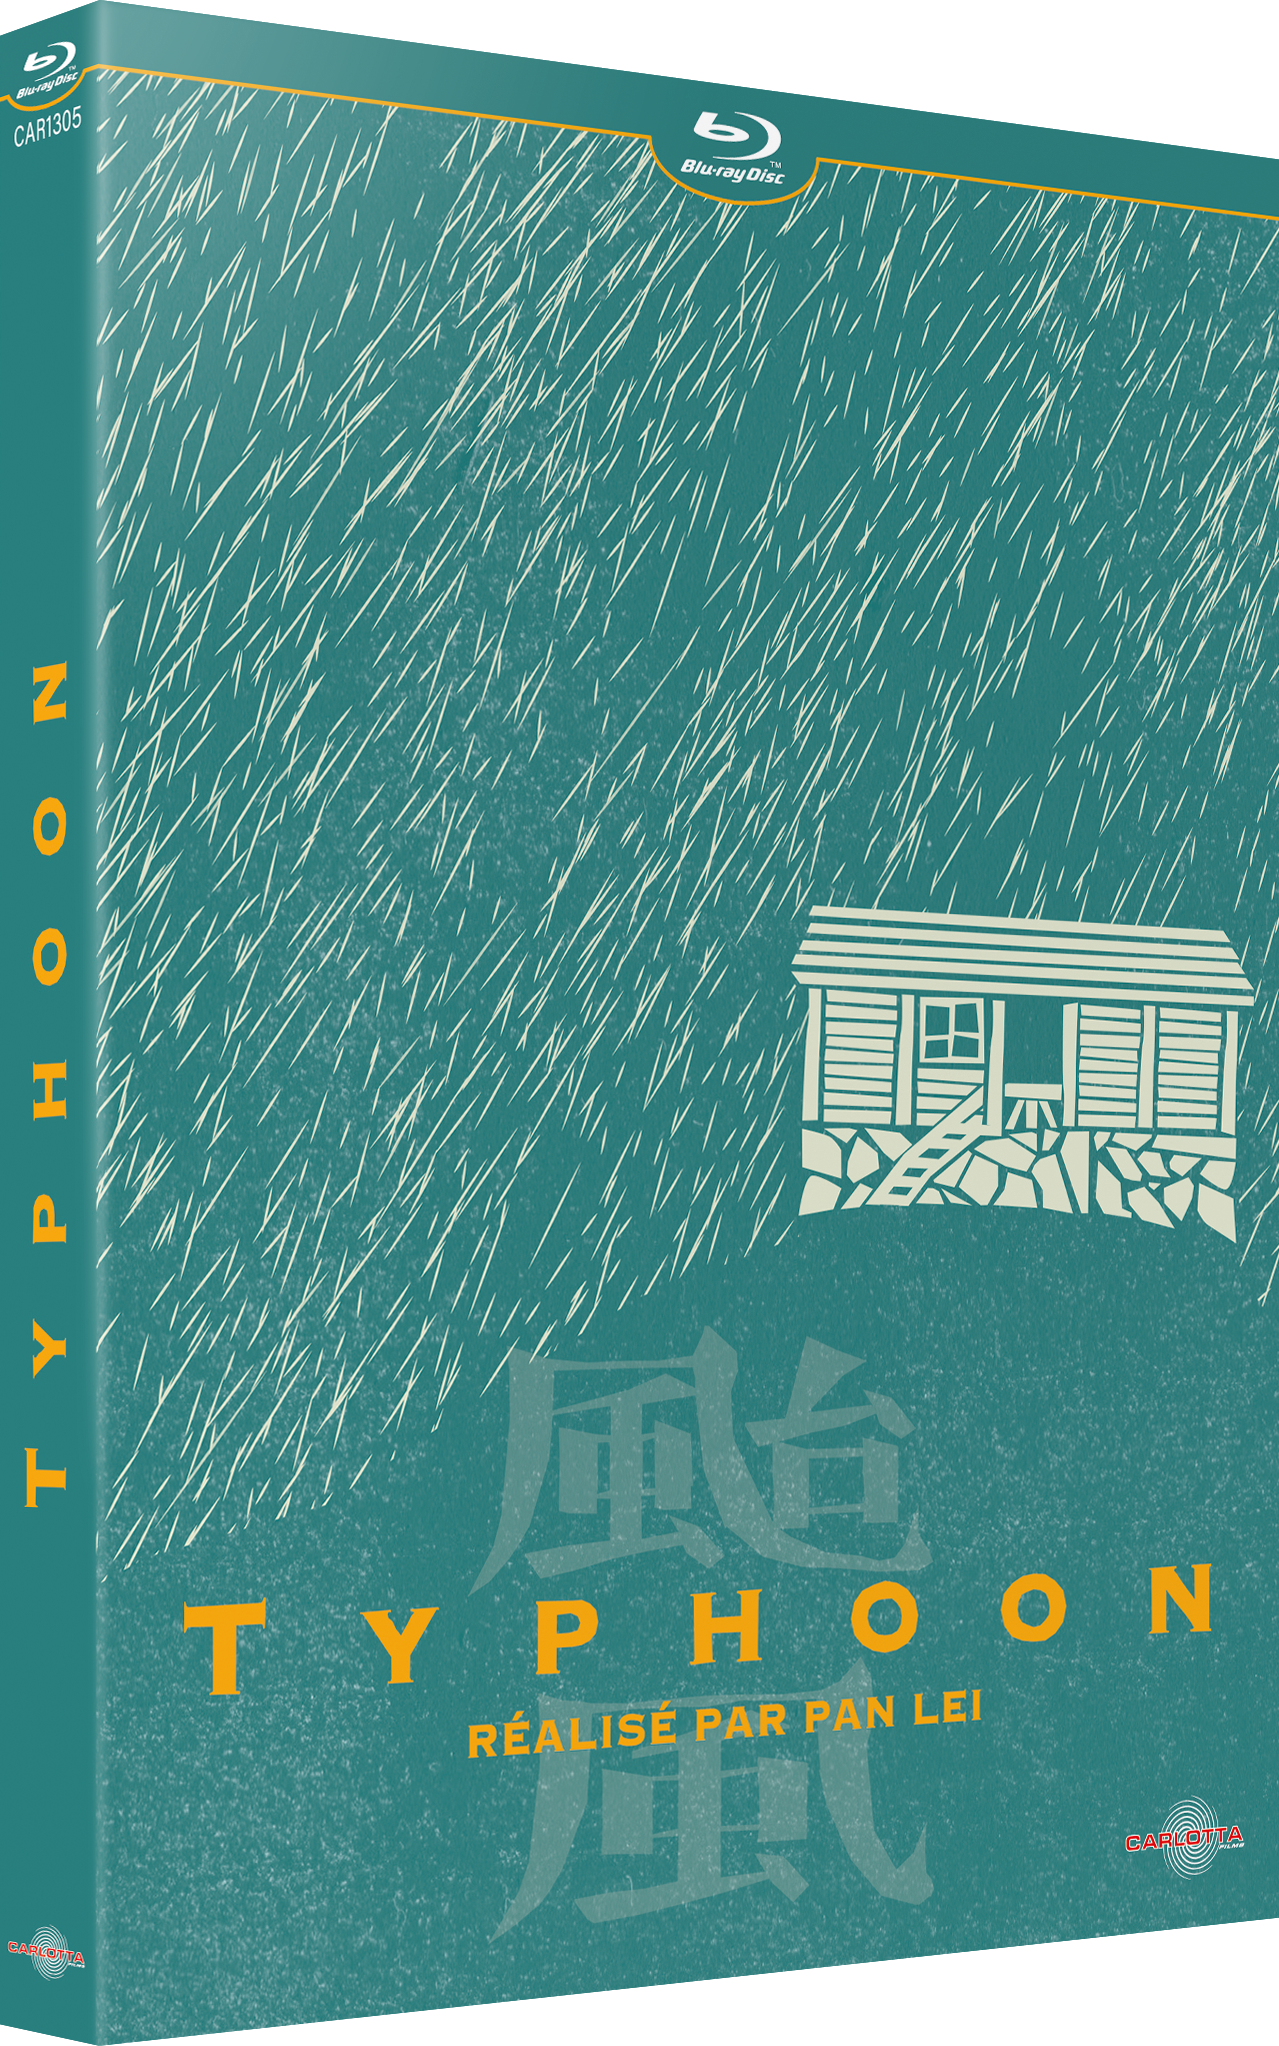 Typhoon de Pan Lei